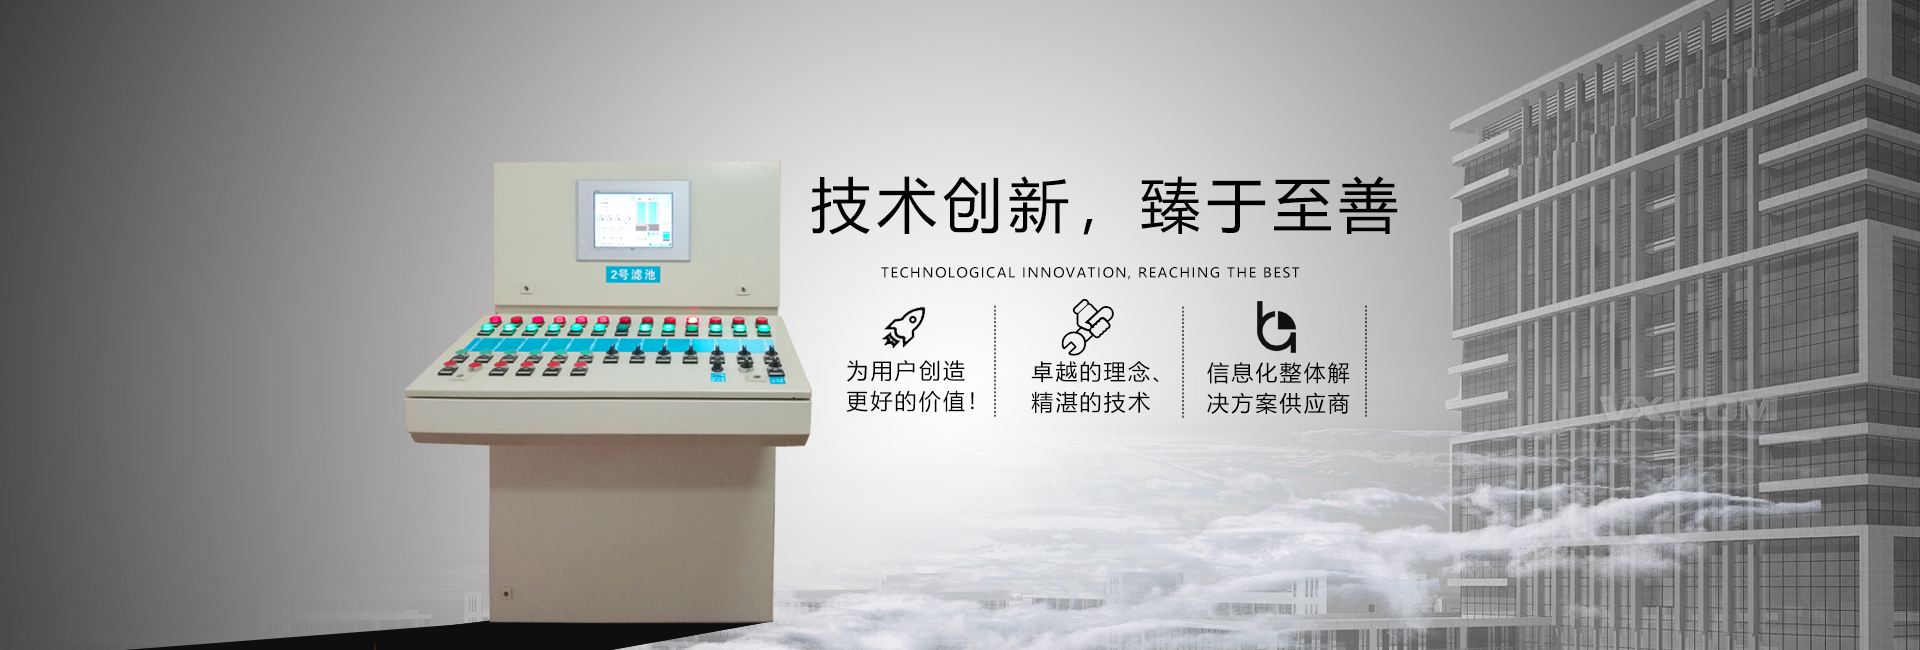 贵州高低压产品公司为您介绍高低压控制柜的知识